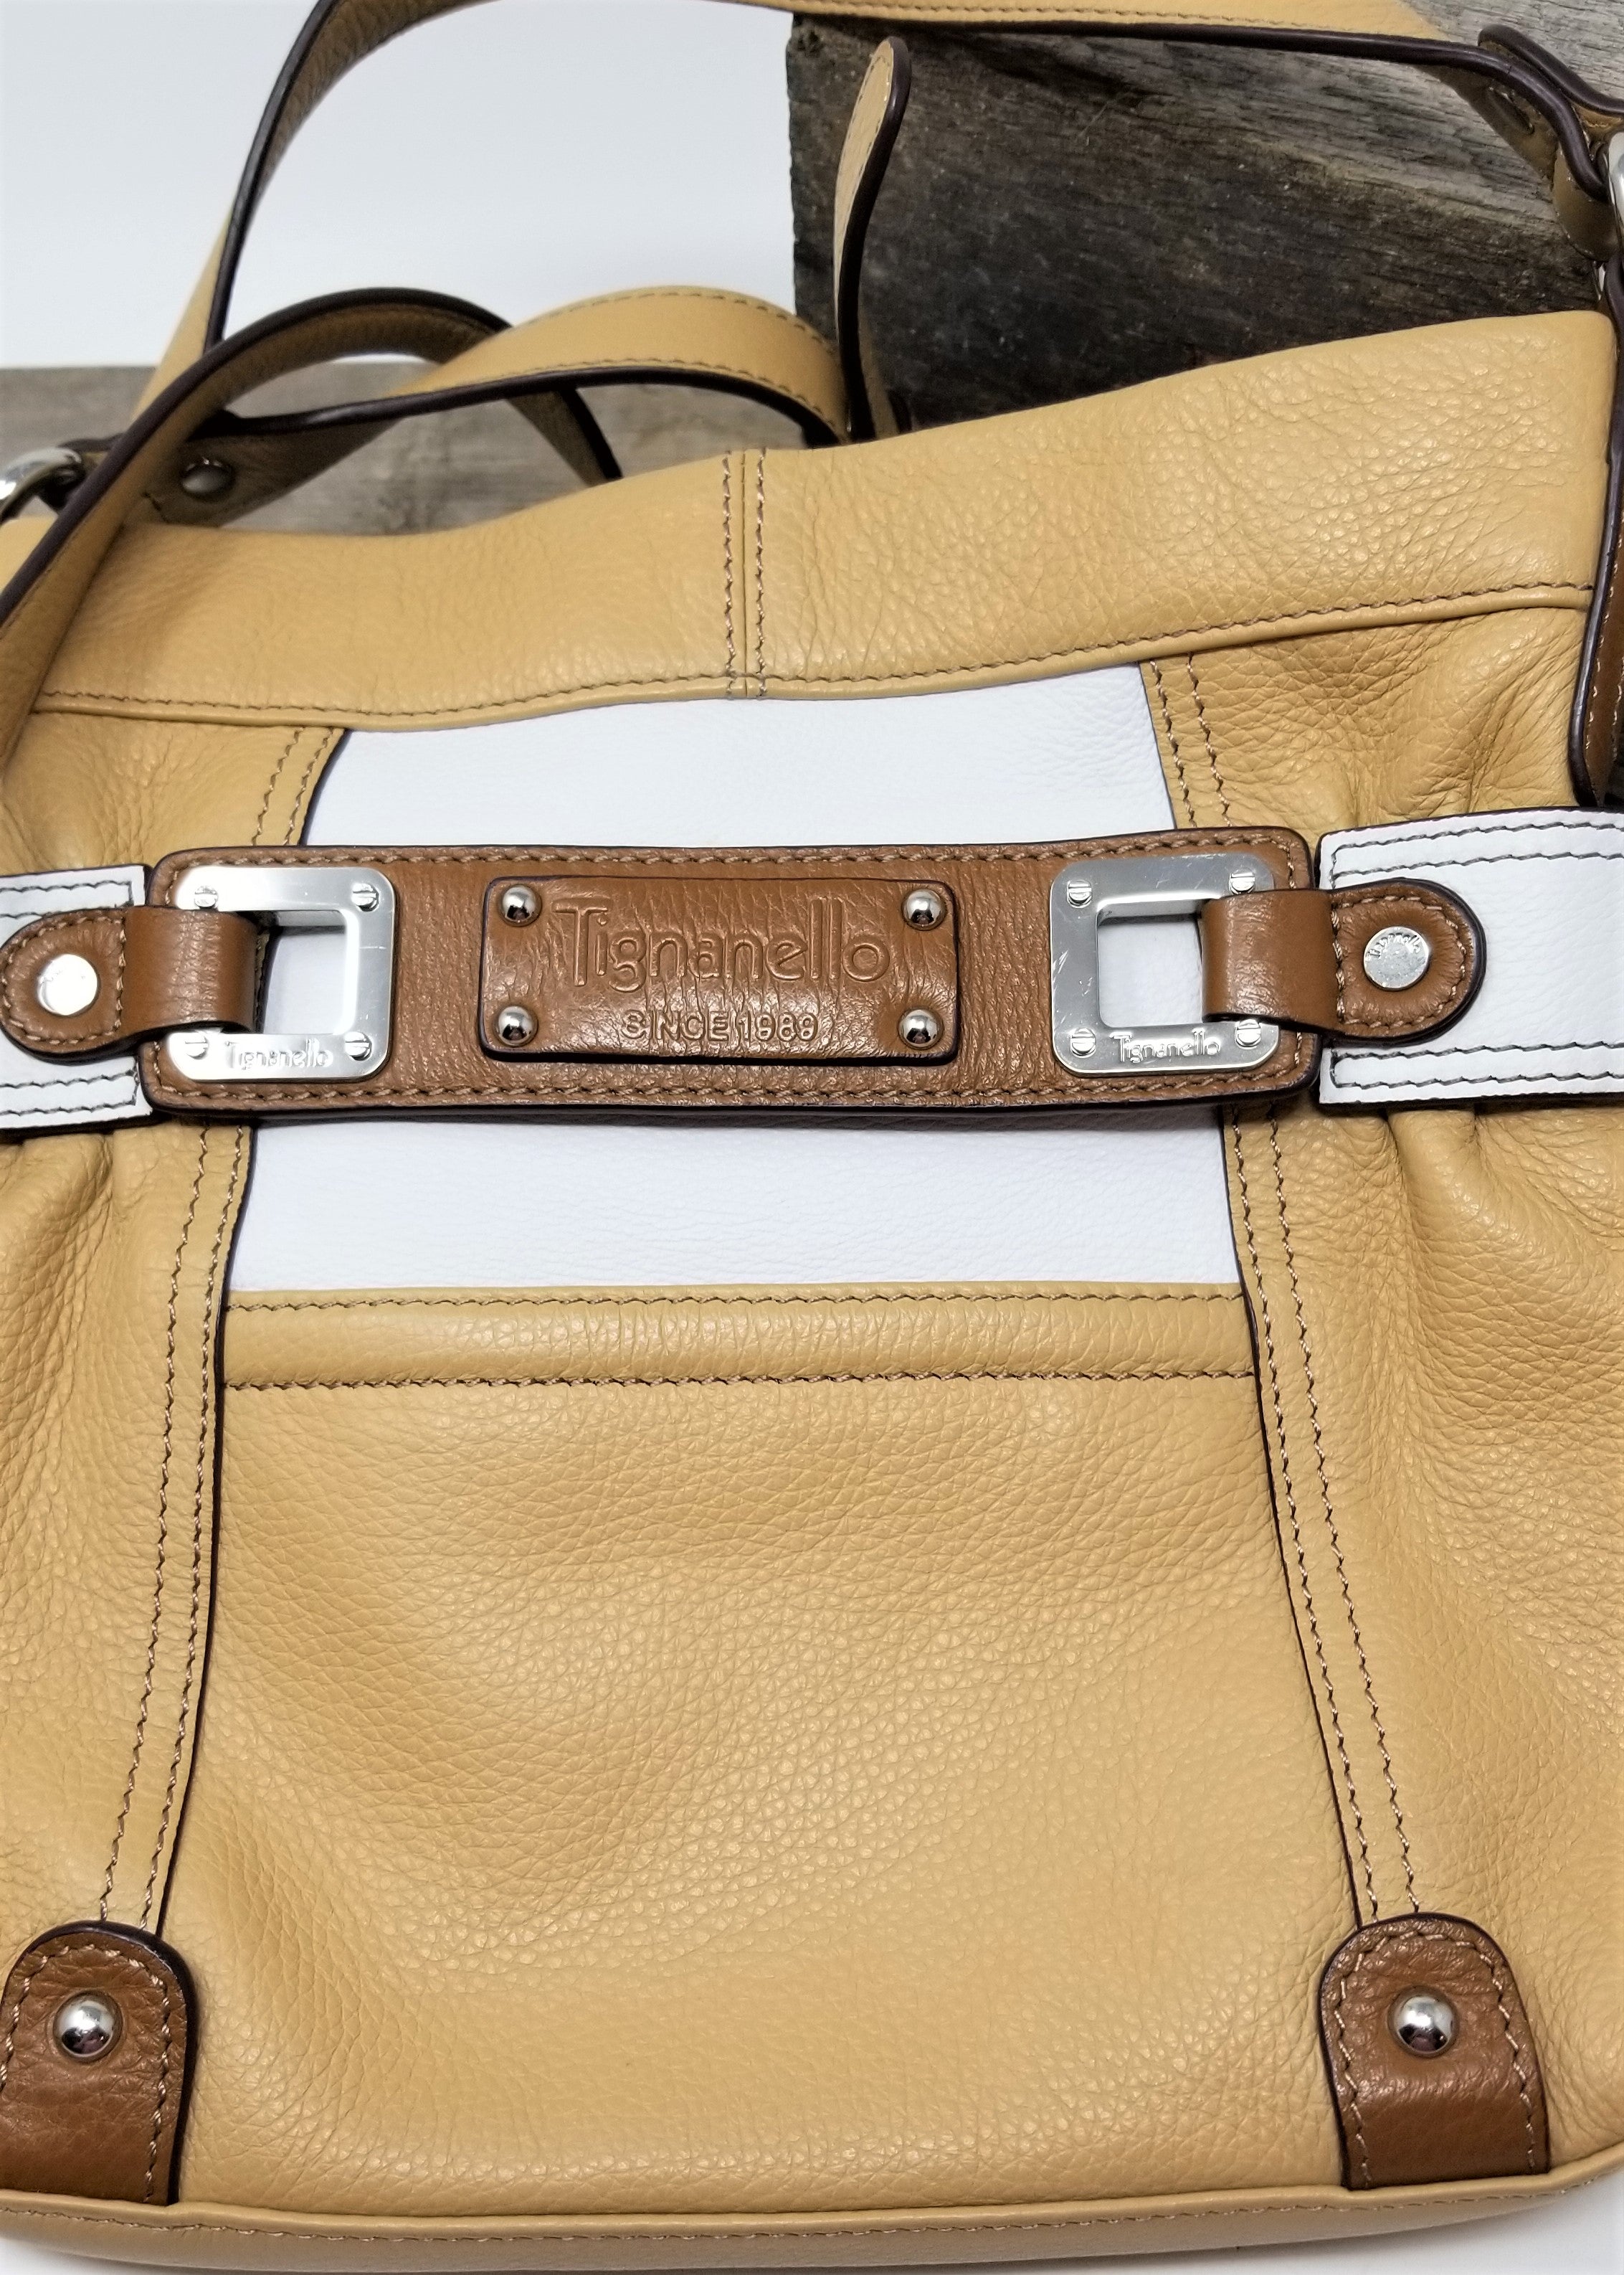 Tignanello | Bags | Tignanello Black White And Brown Leather Handbag |  Poshmark